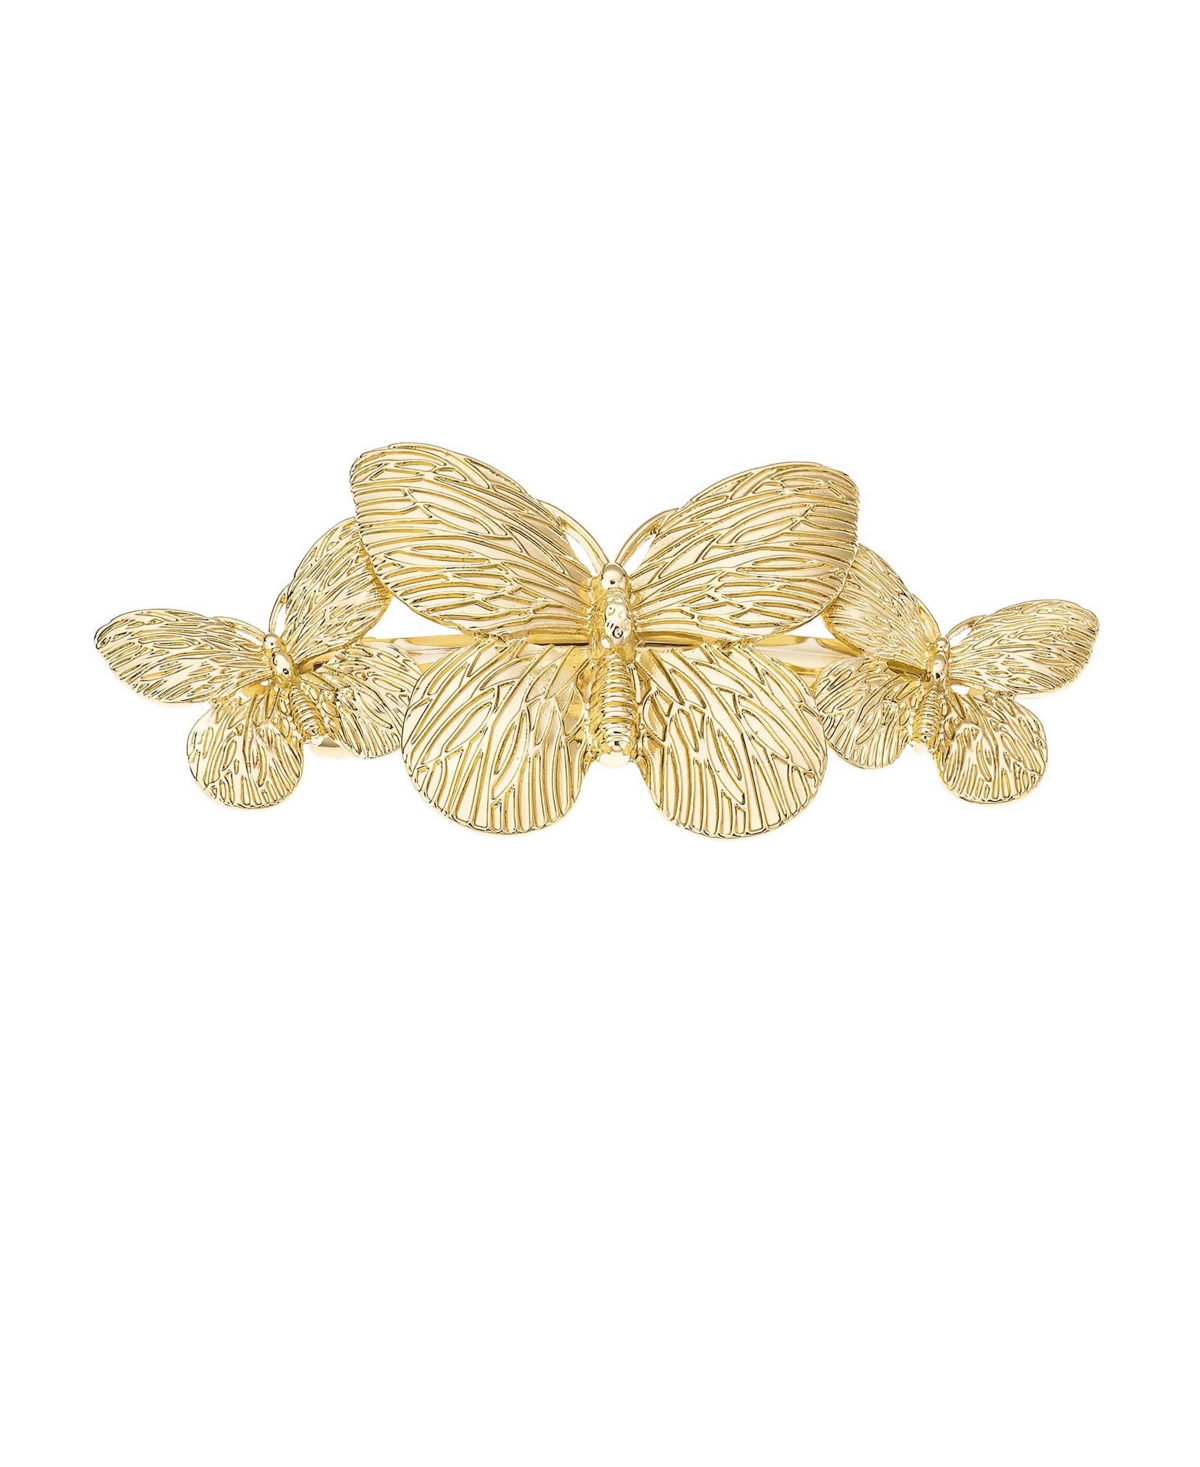 Gimme Butterflies Gold-Tone Hair Clip - Gold